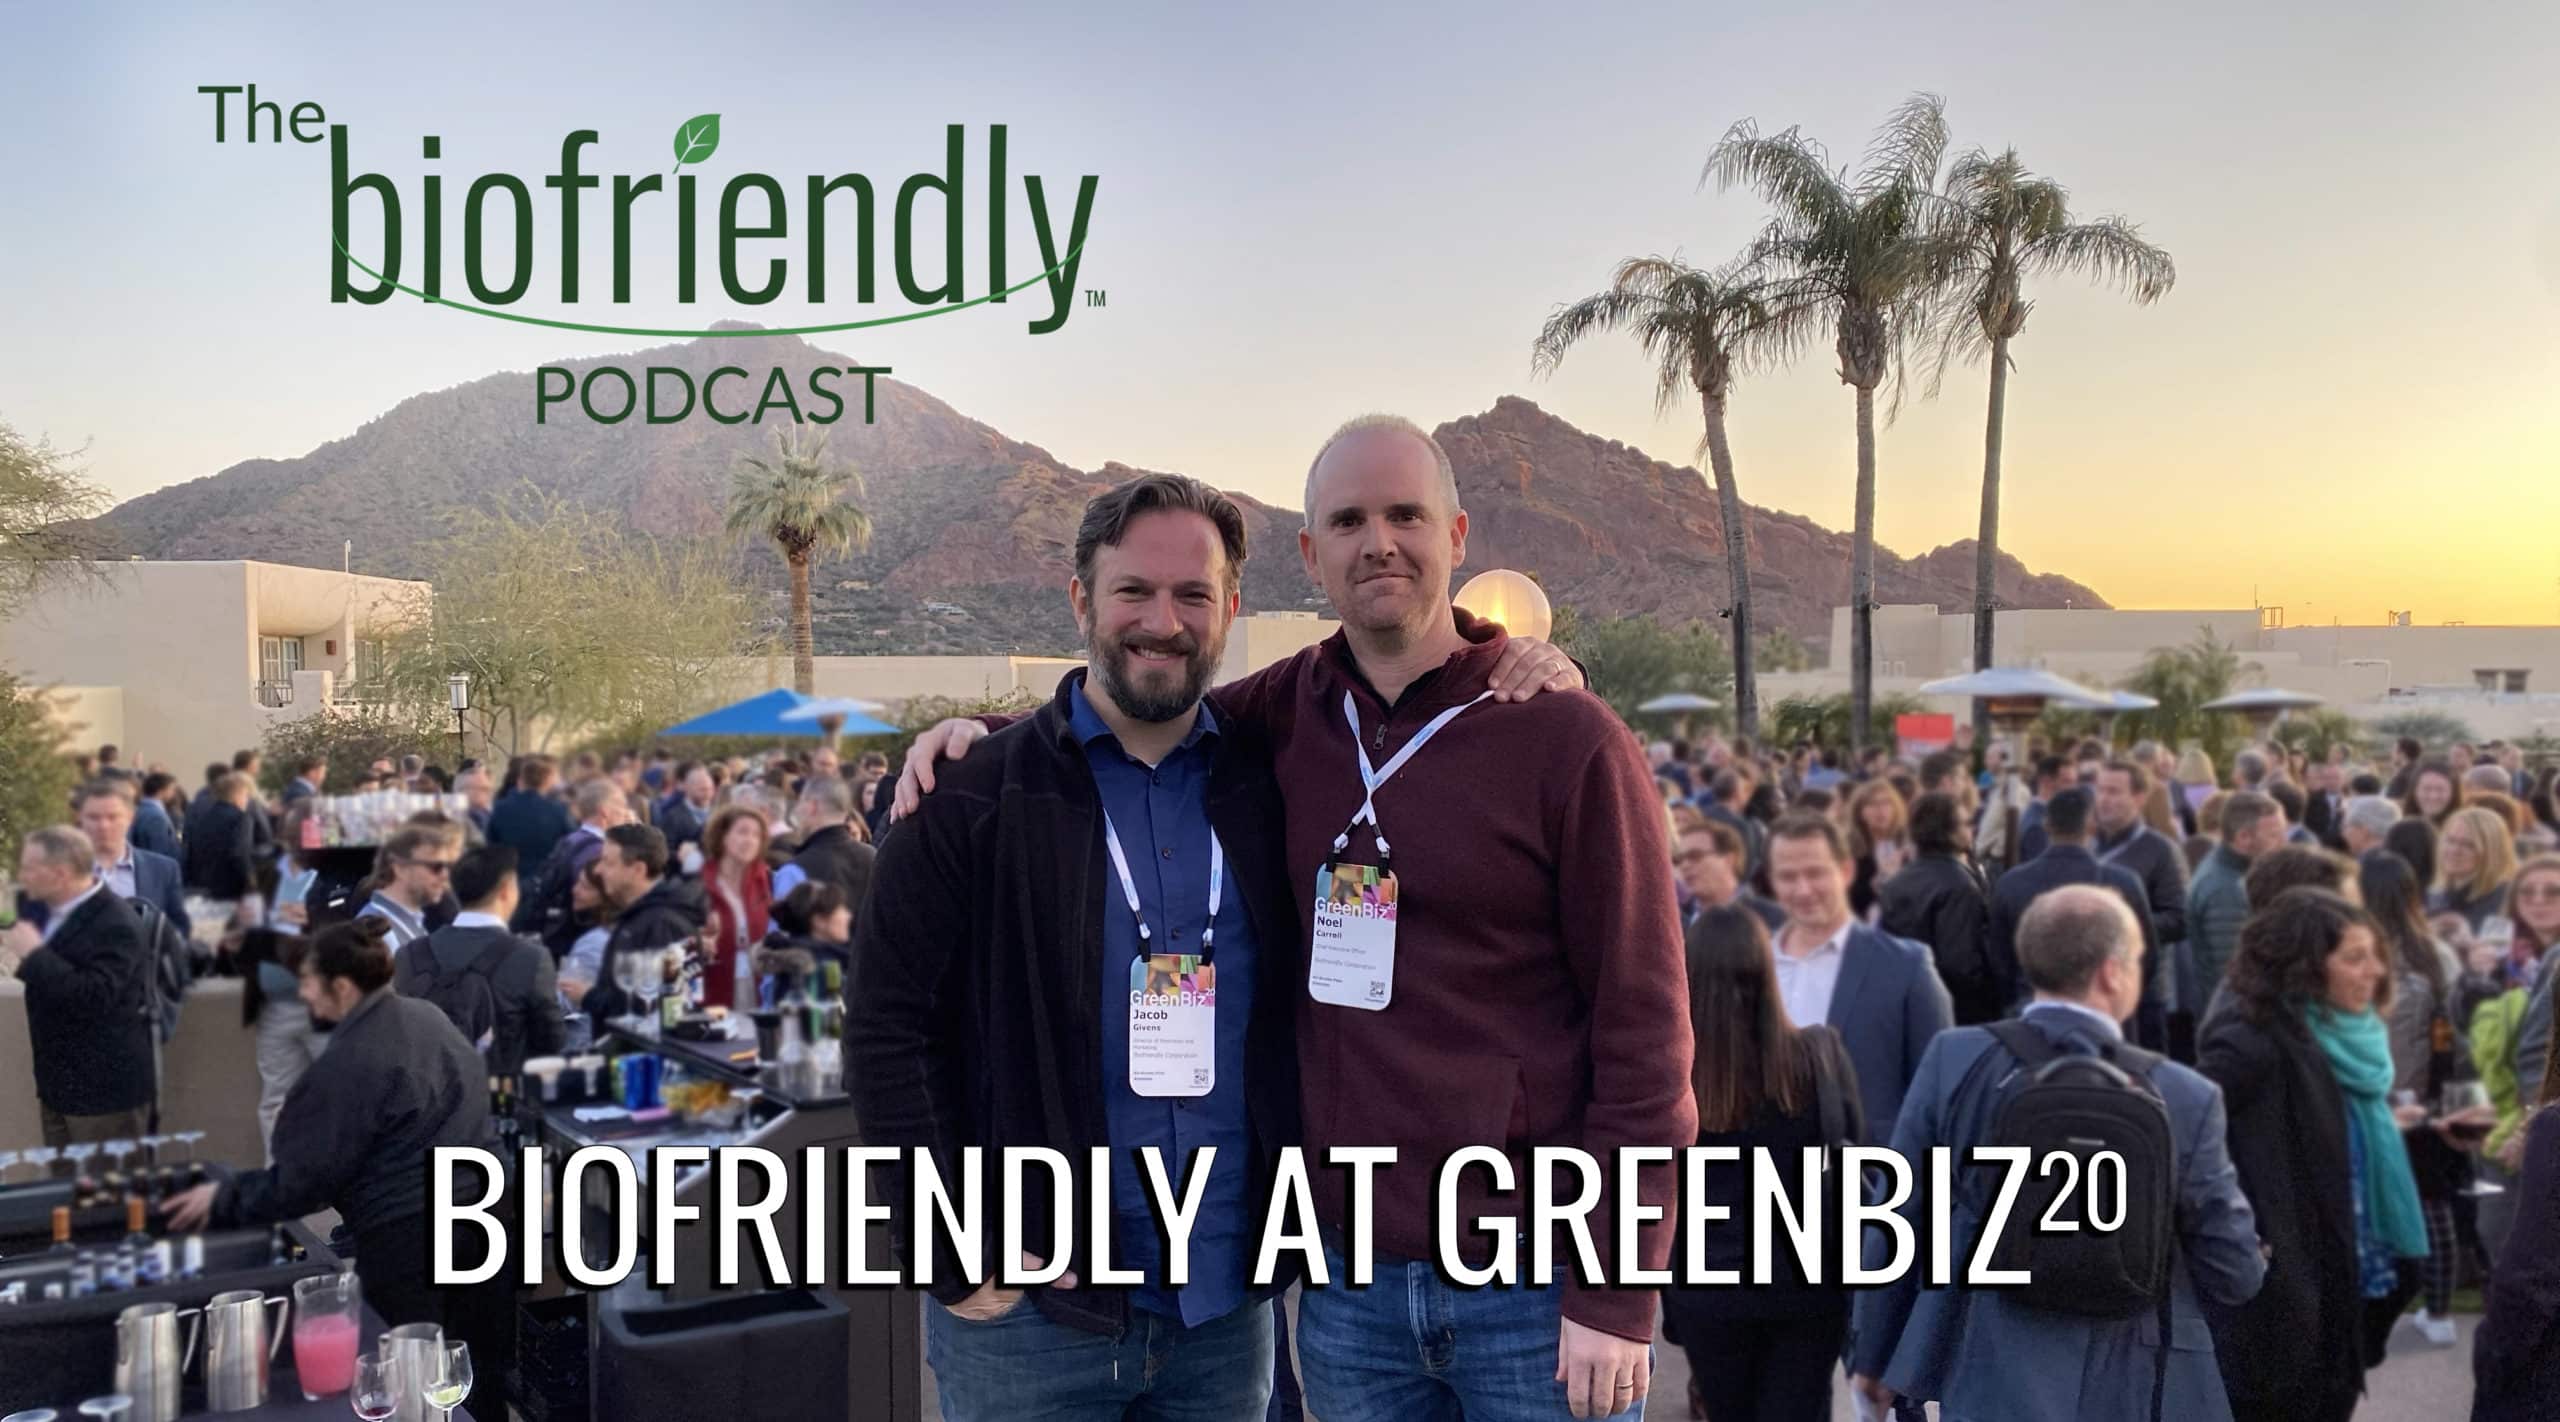 The Biofriendly Podcast - Episode 50 - Biofriendly At GreenBiz 20